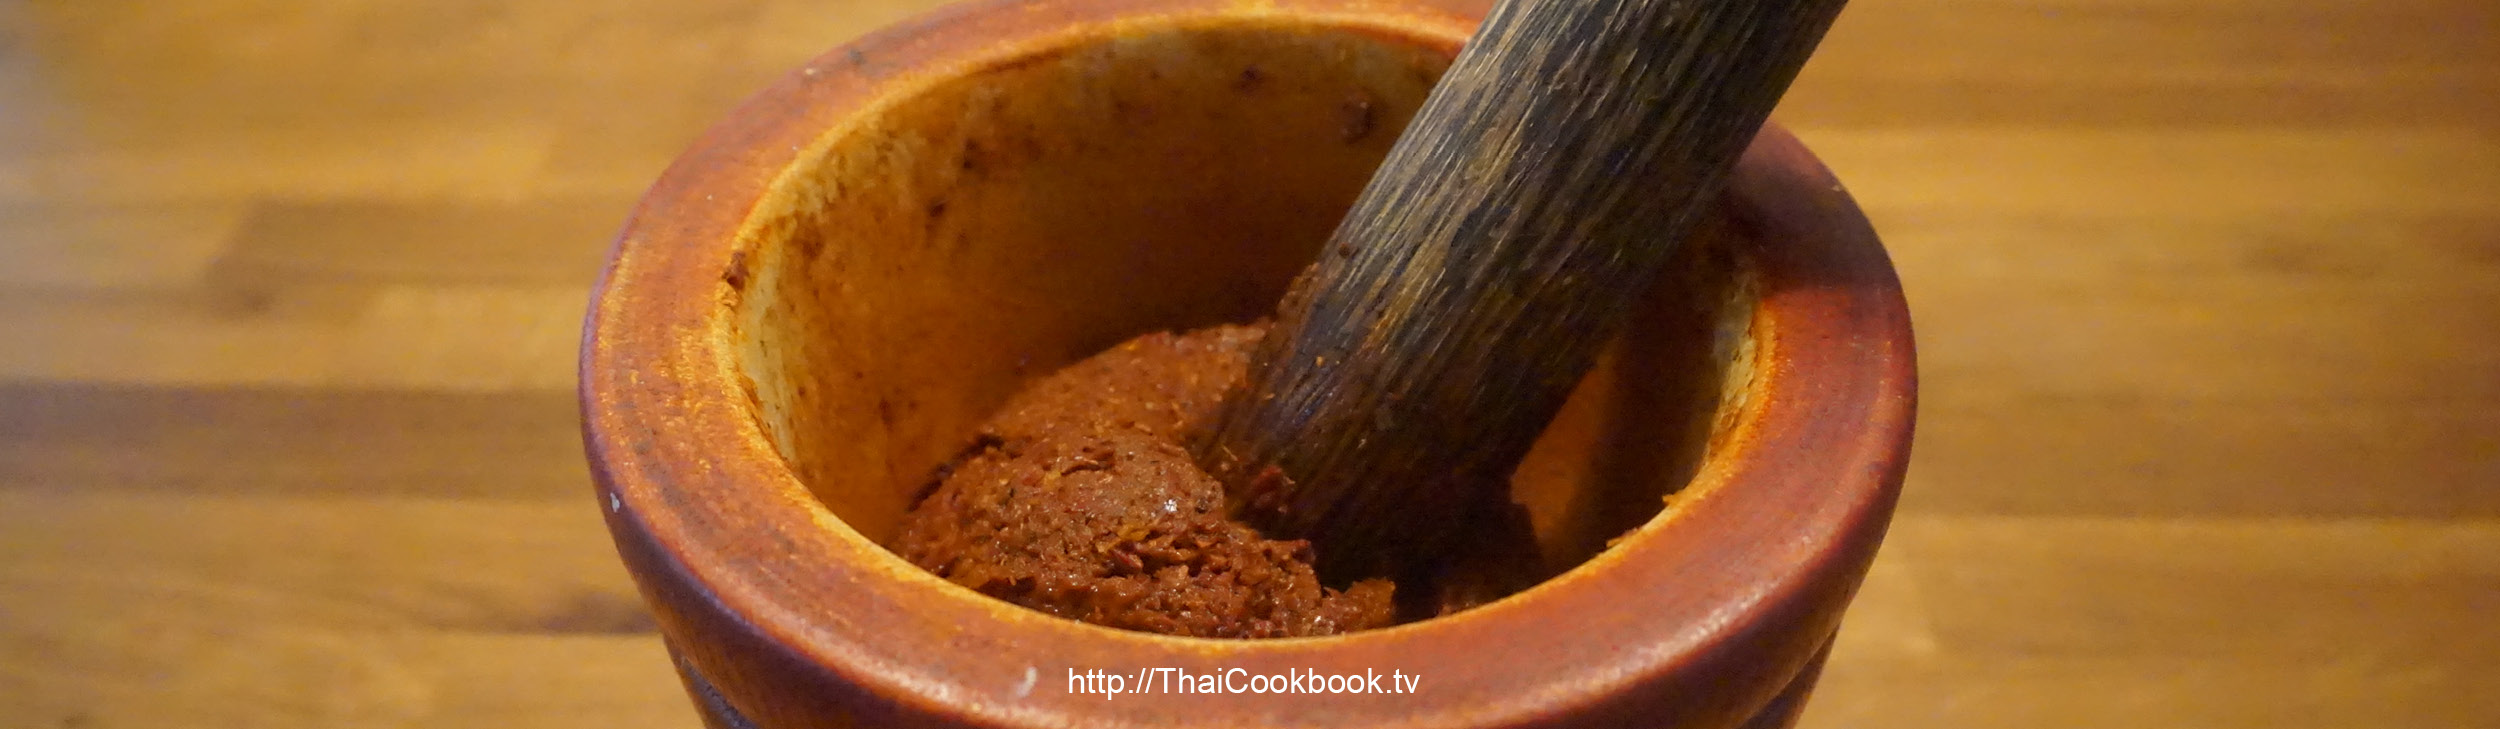 Authentic Thai recipe for Massaman Curry Paste